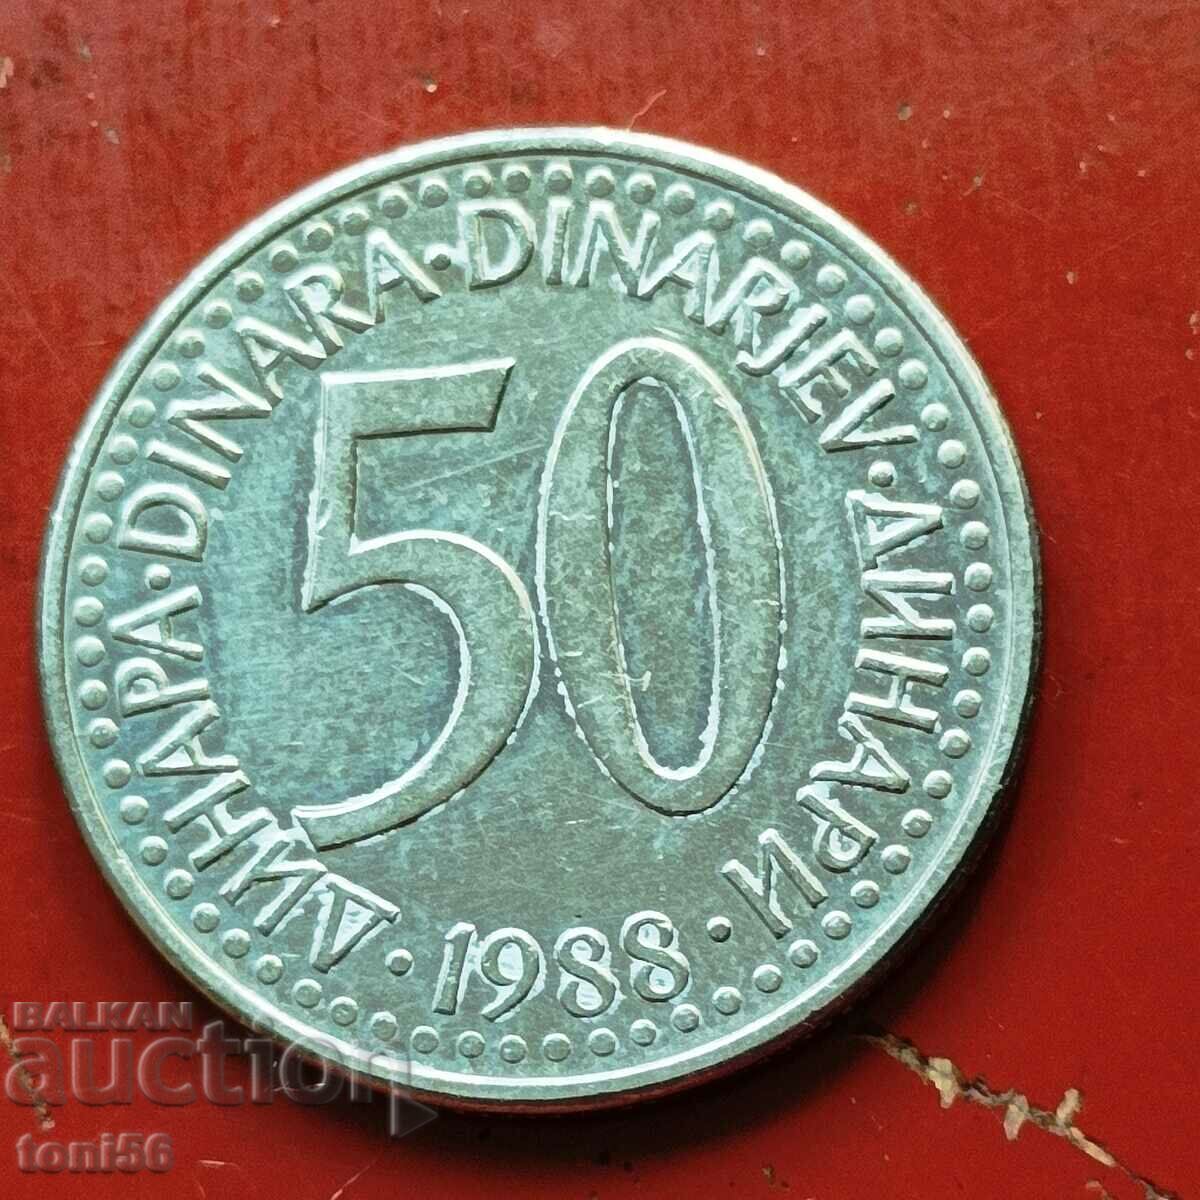 Yugoslavia - 50 dinars 1988